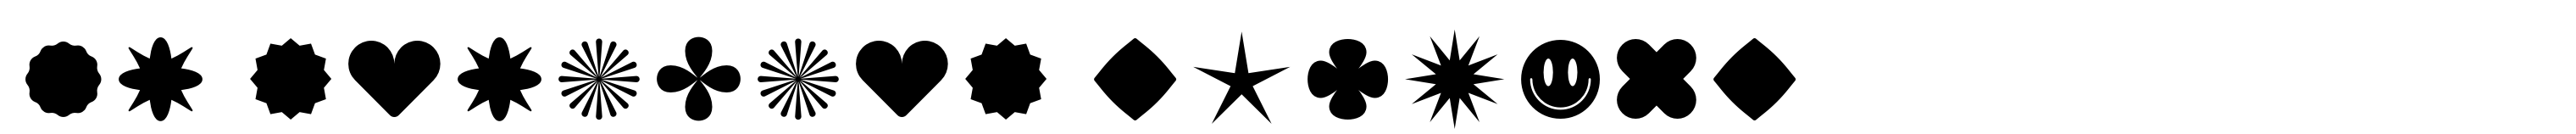 FT Activica Symbols